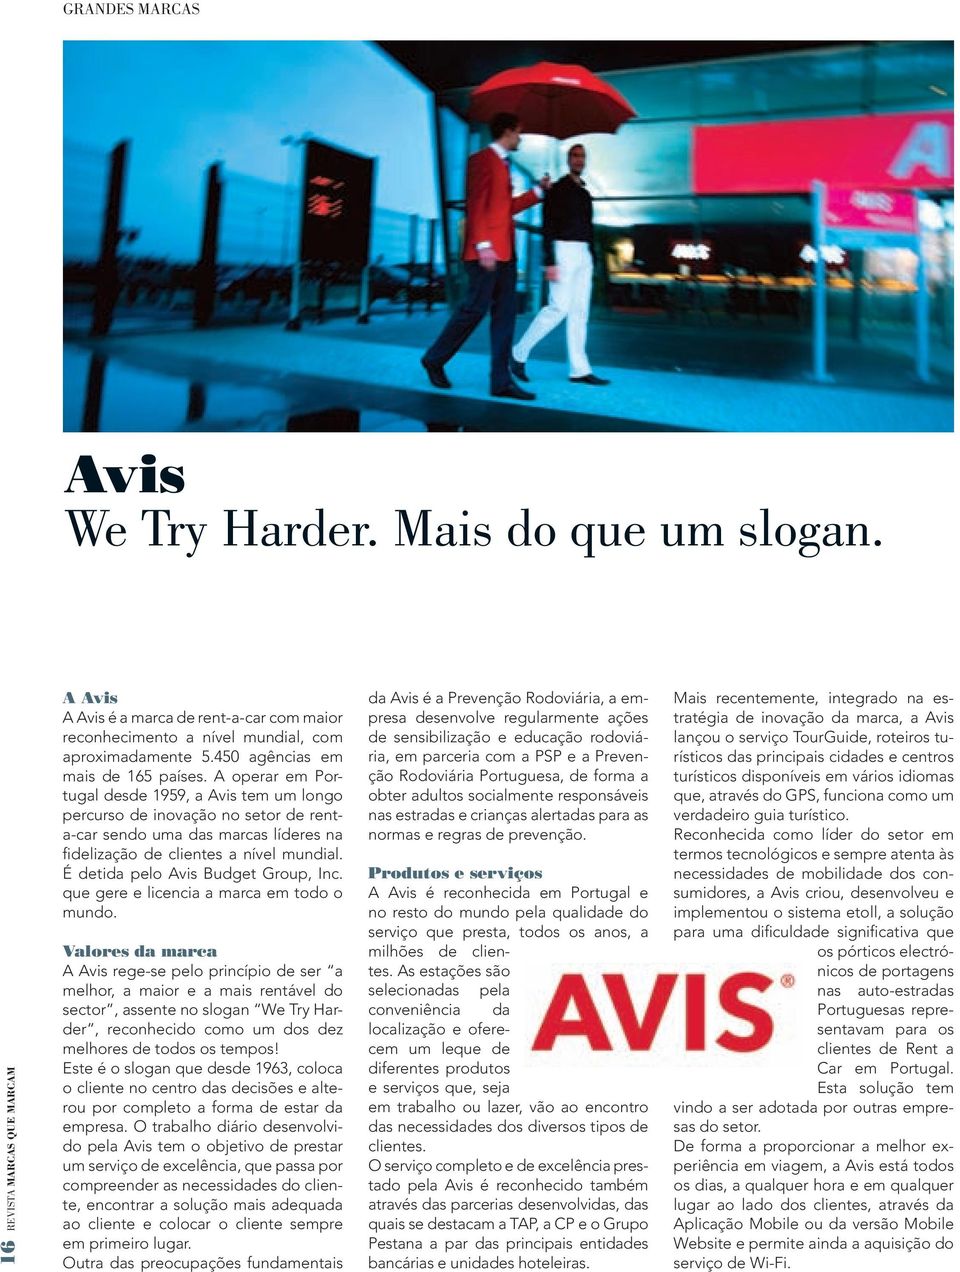 A operar em Portugal desde 1959, a Avis tem um longo percurso de inovação no setor de renta-car sendo uma das marcas líderes na fidelização de clientes a nível mundial.